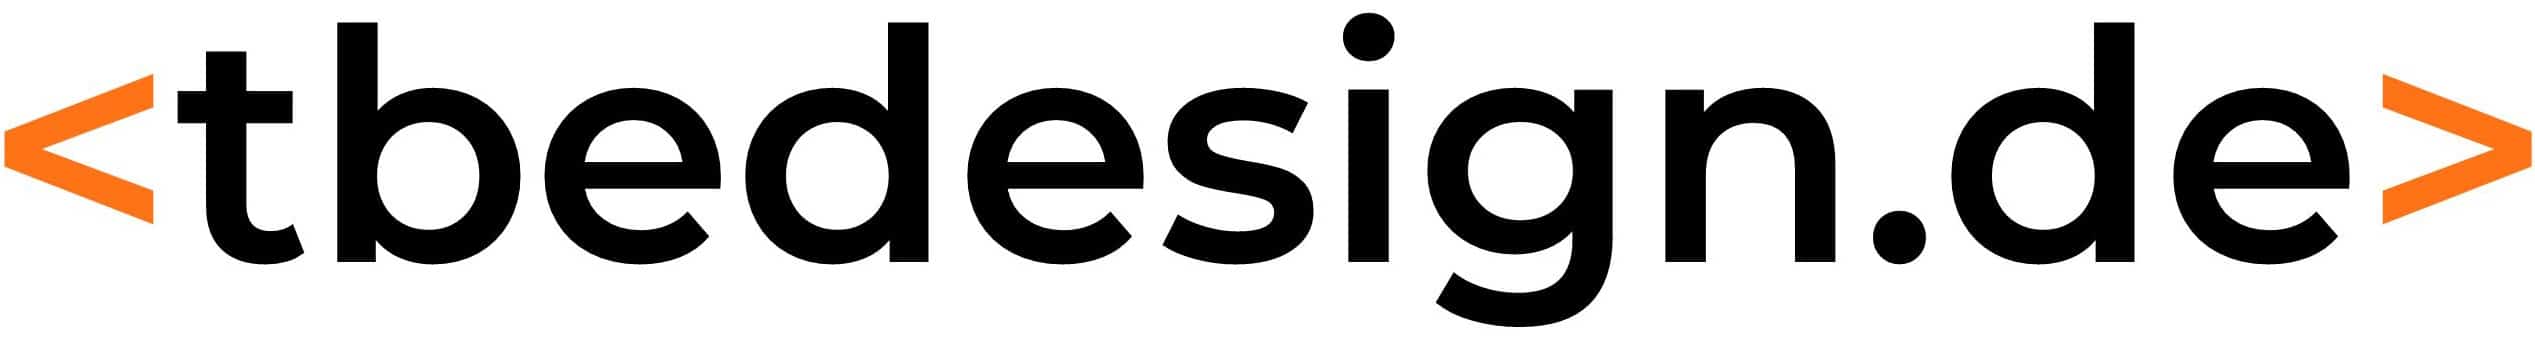 tbedesign.de - Webdesign Hosting Service